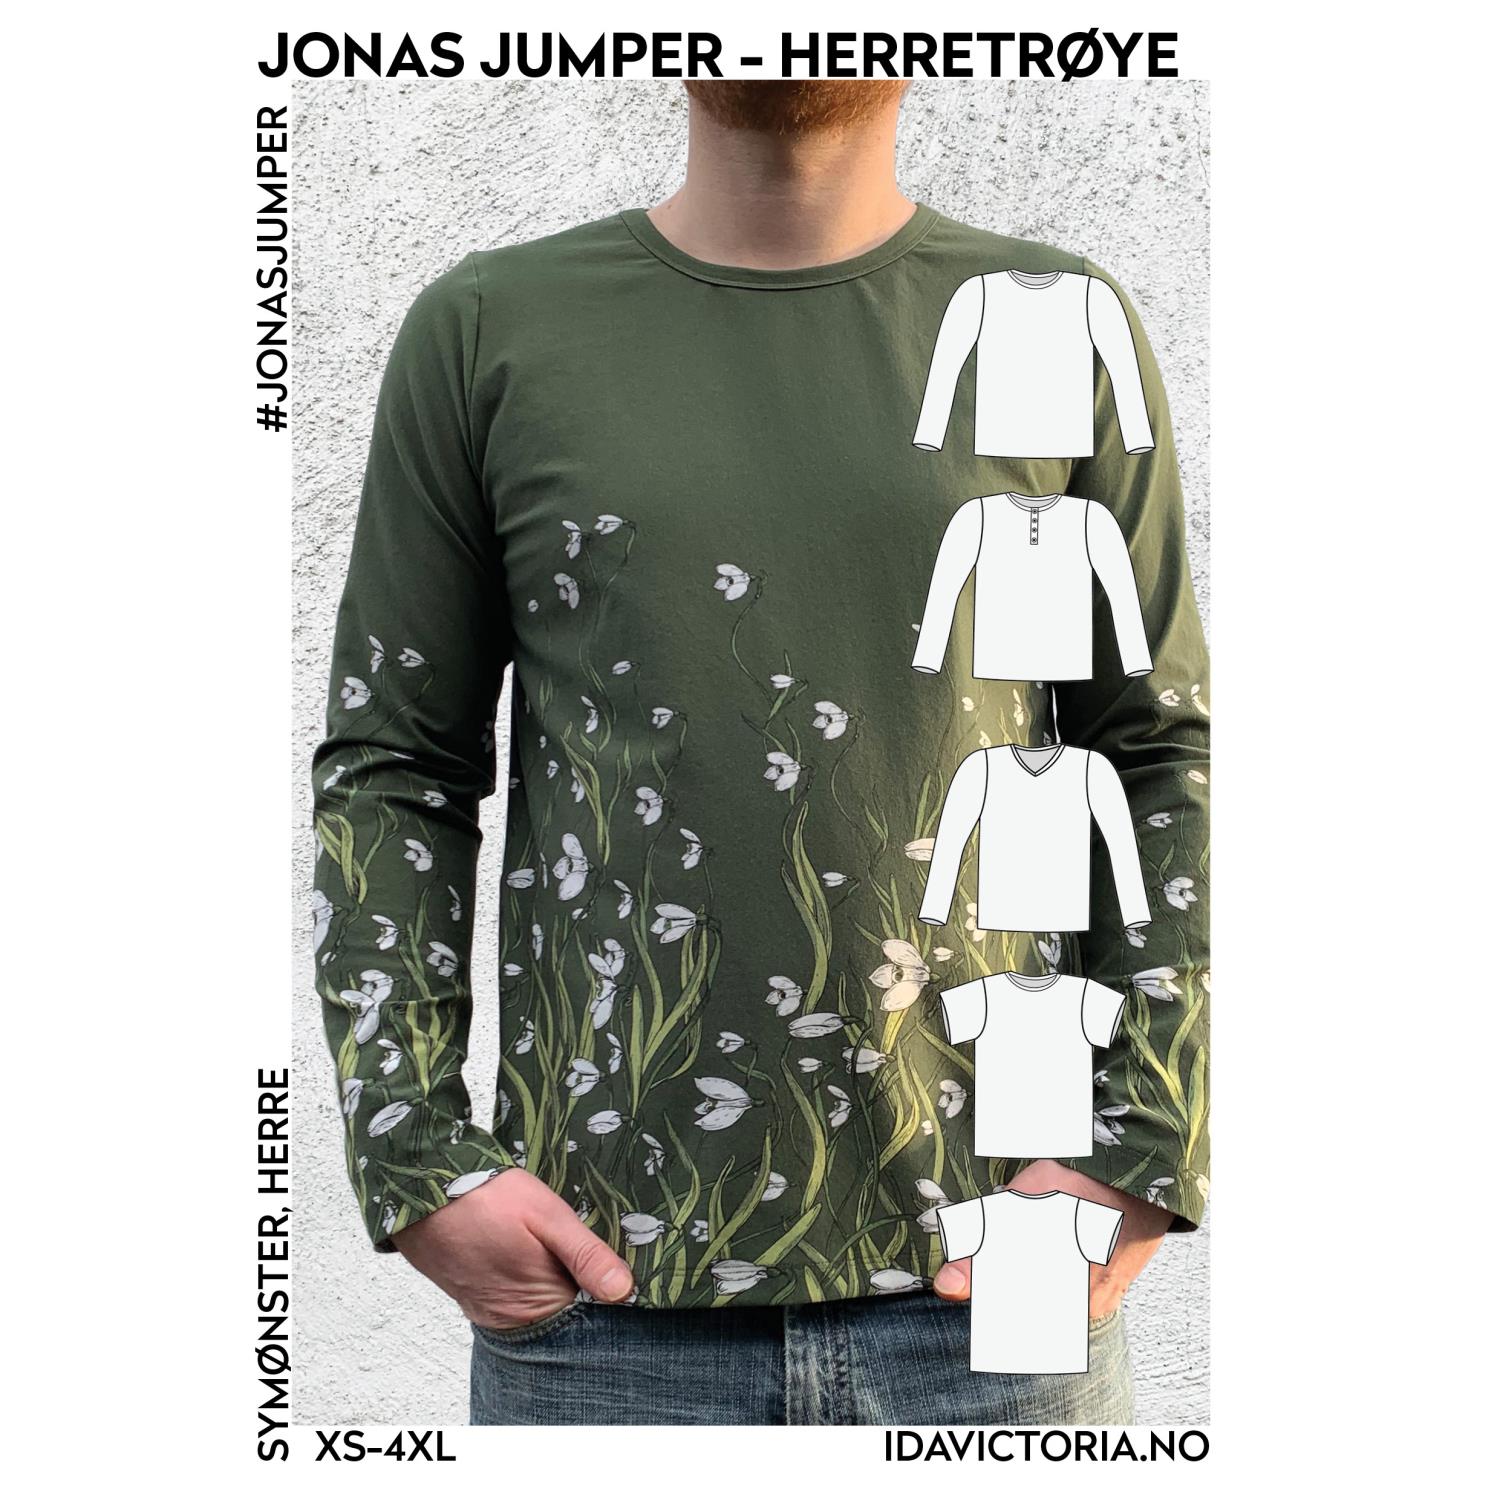 Jonas Jumper – herretrøye